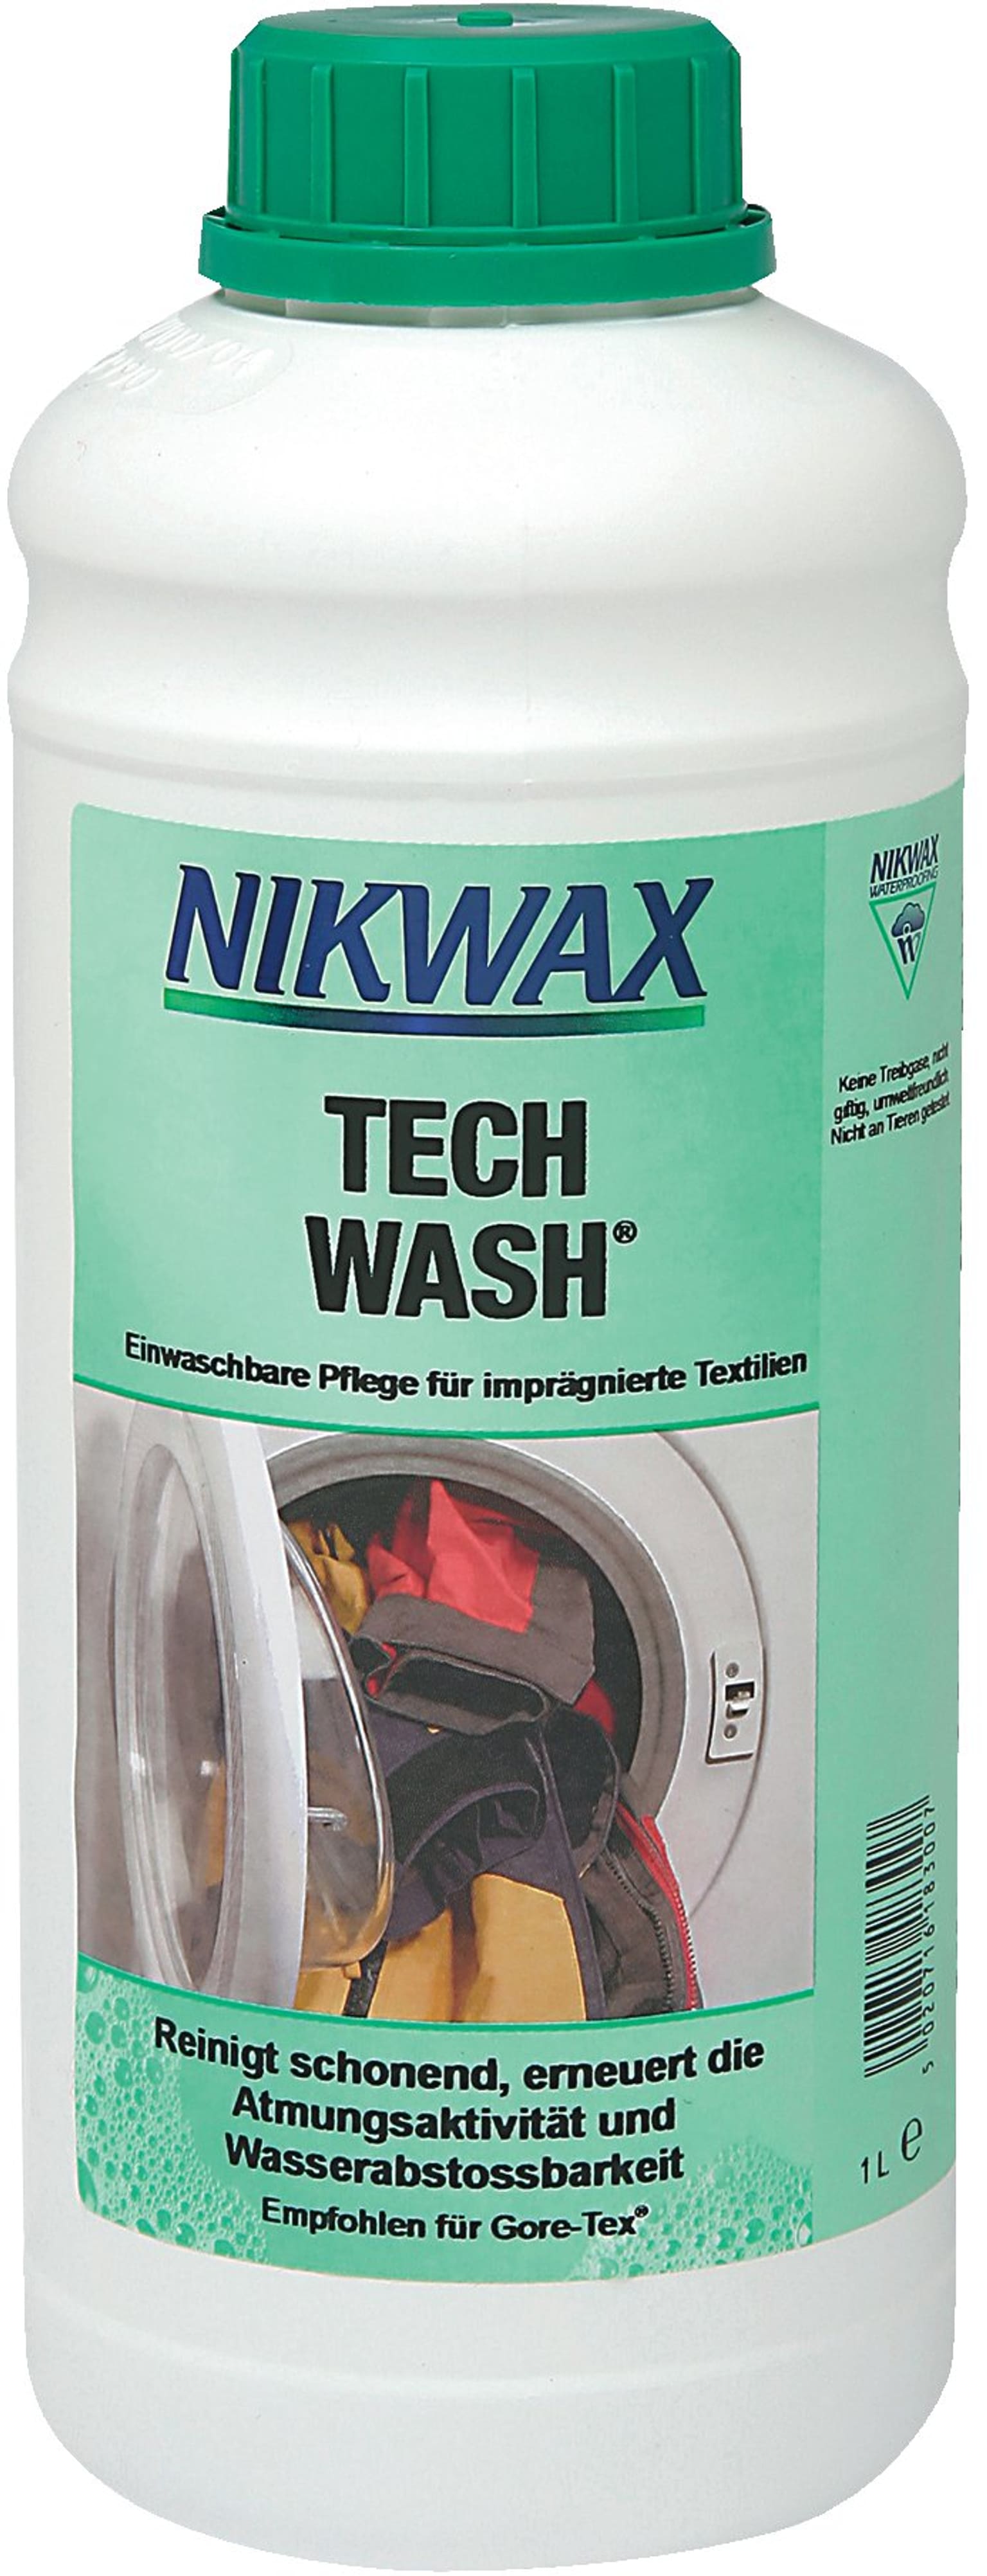 Nikwax Nikwax Tech Wash 1 Liter Waschmittel 1